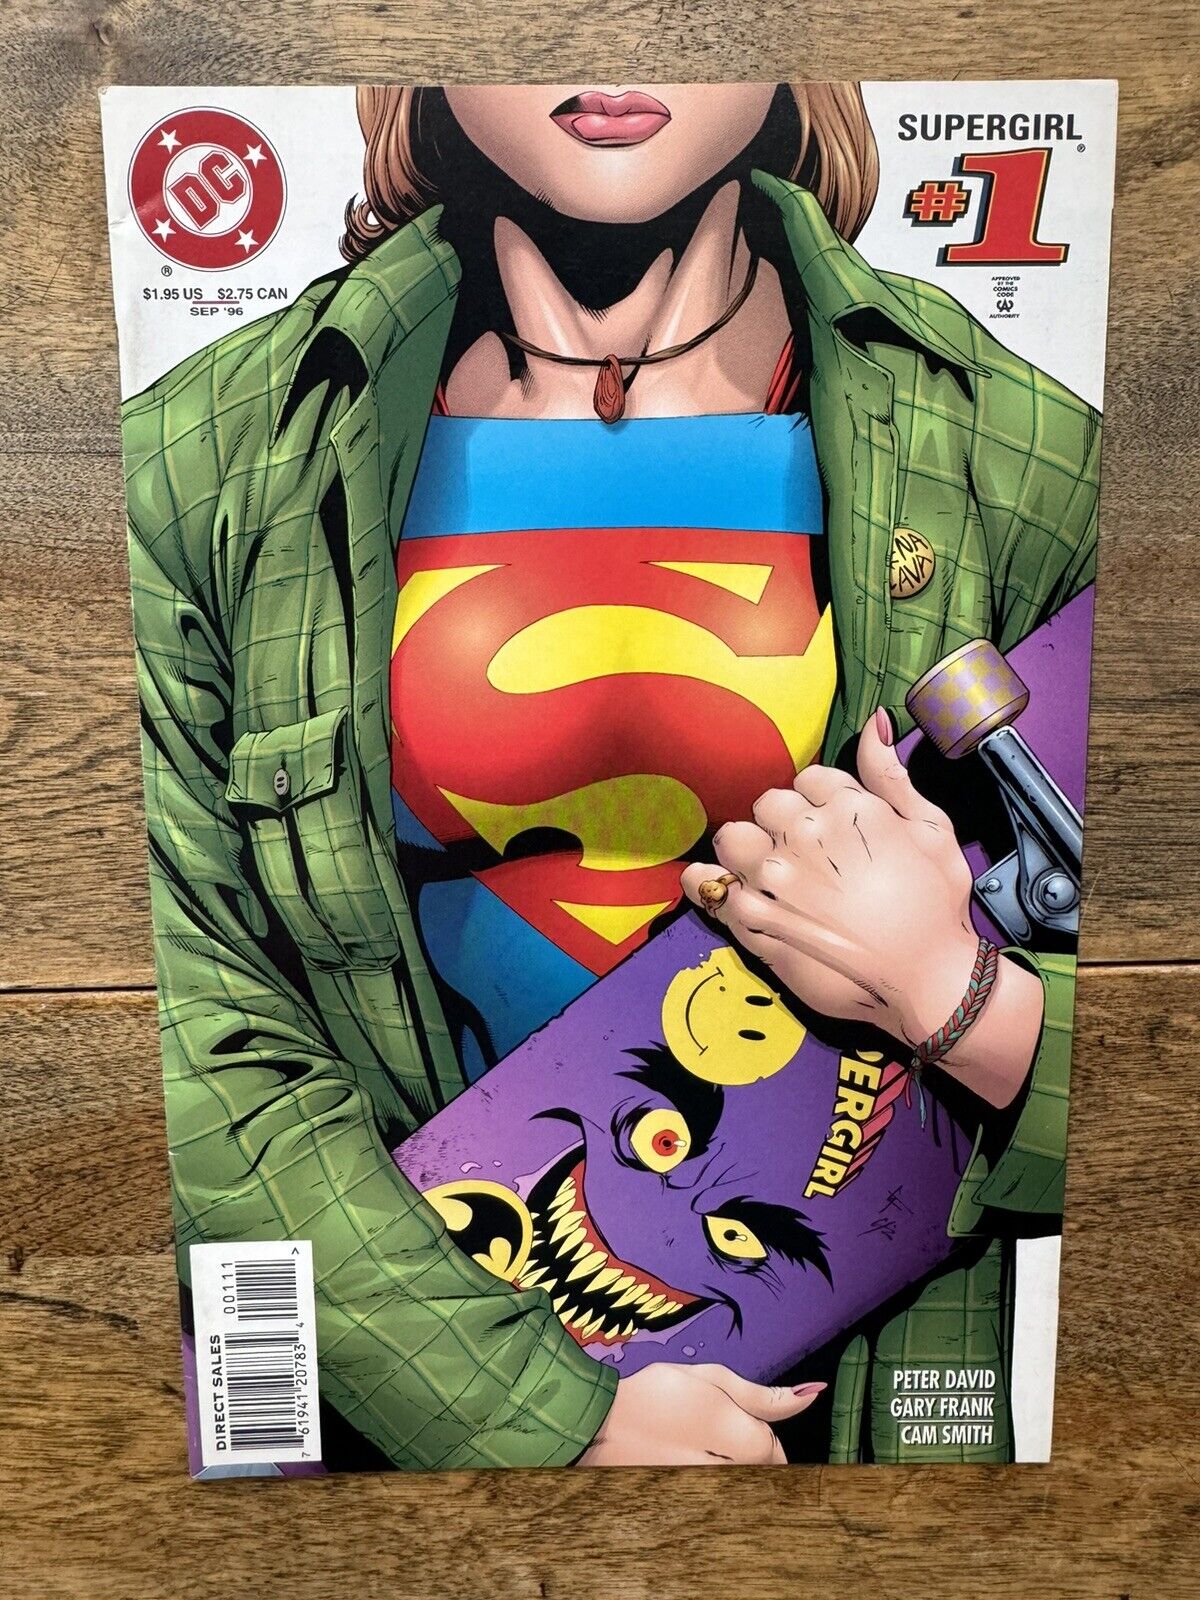 Supergirl 1 (1996) DC Comics • Peter David, Gary Frank